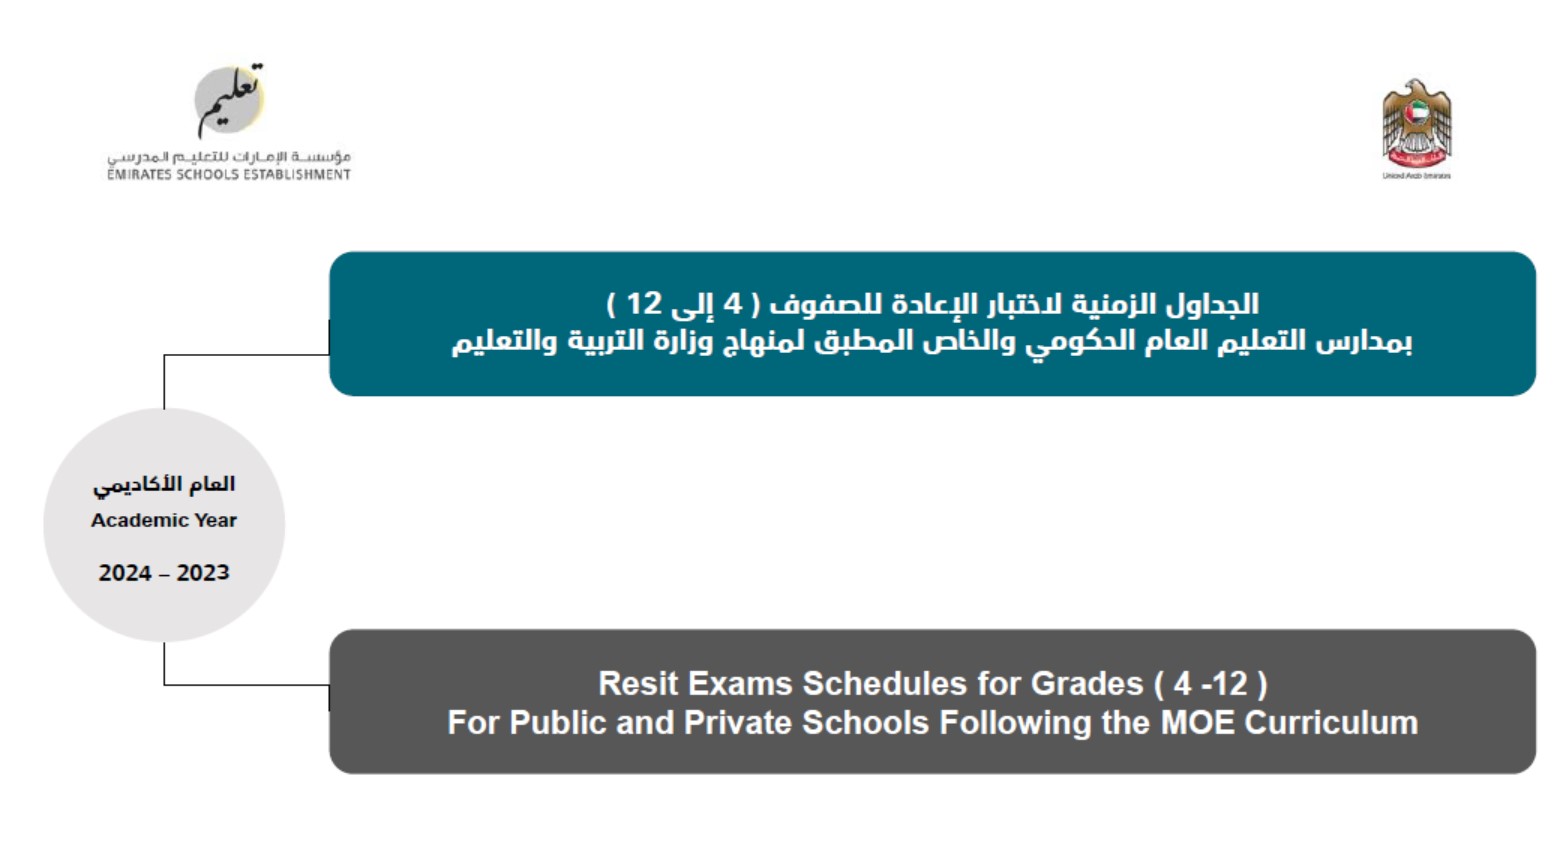 الجداول الزمنية لاختبار الإعادة للصفوف 4 إلى 12 بمدارس التعليم العام الحكومي والخاص المطبق لمنهاج وزارة التربية والتعليم الفصل الدراسي الثالث 2023-2024